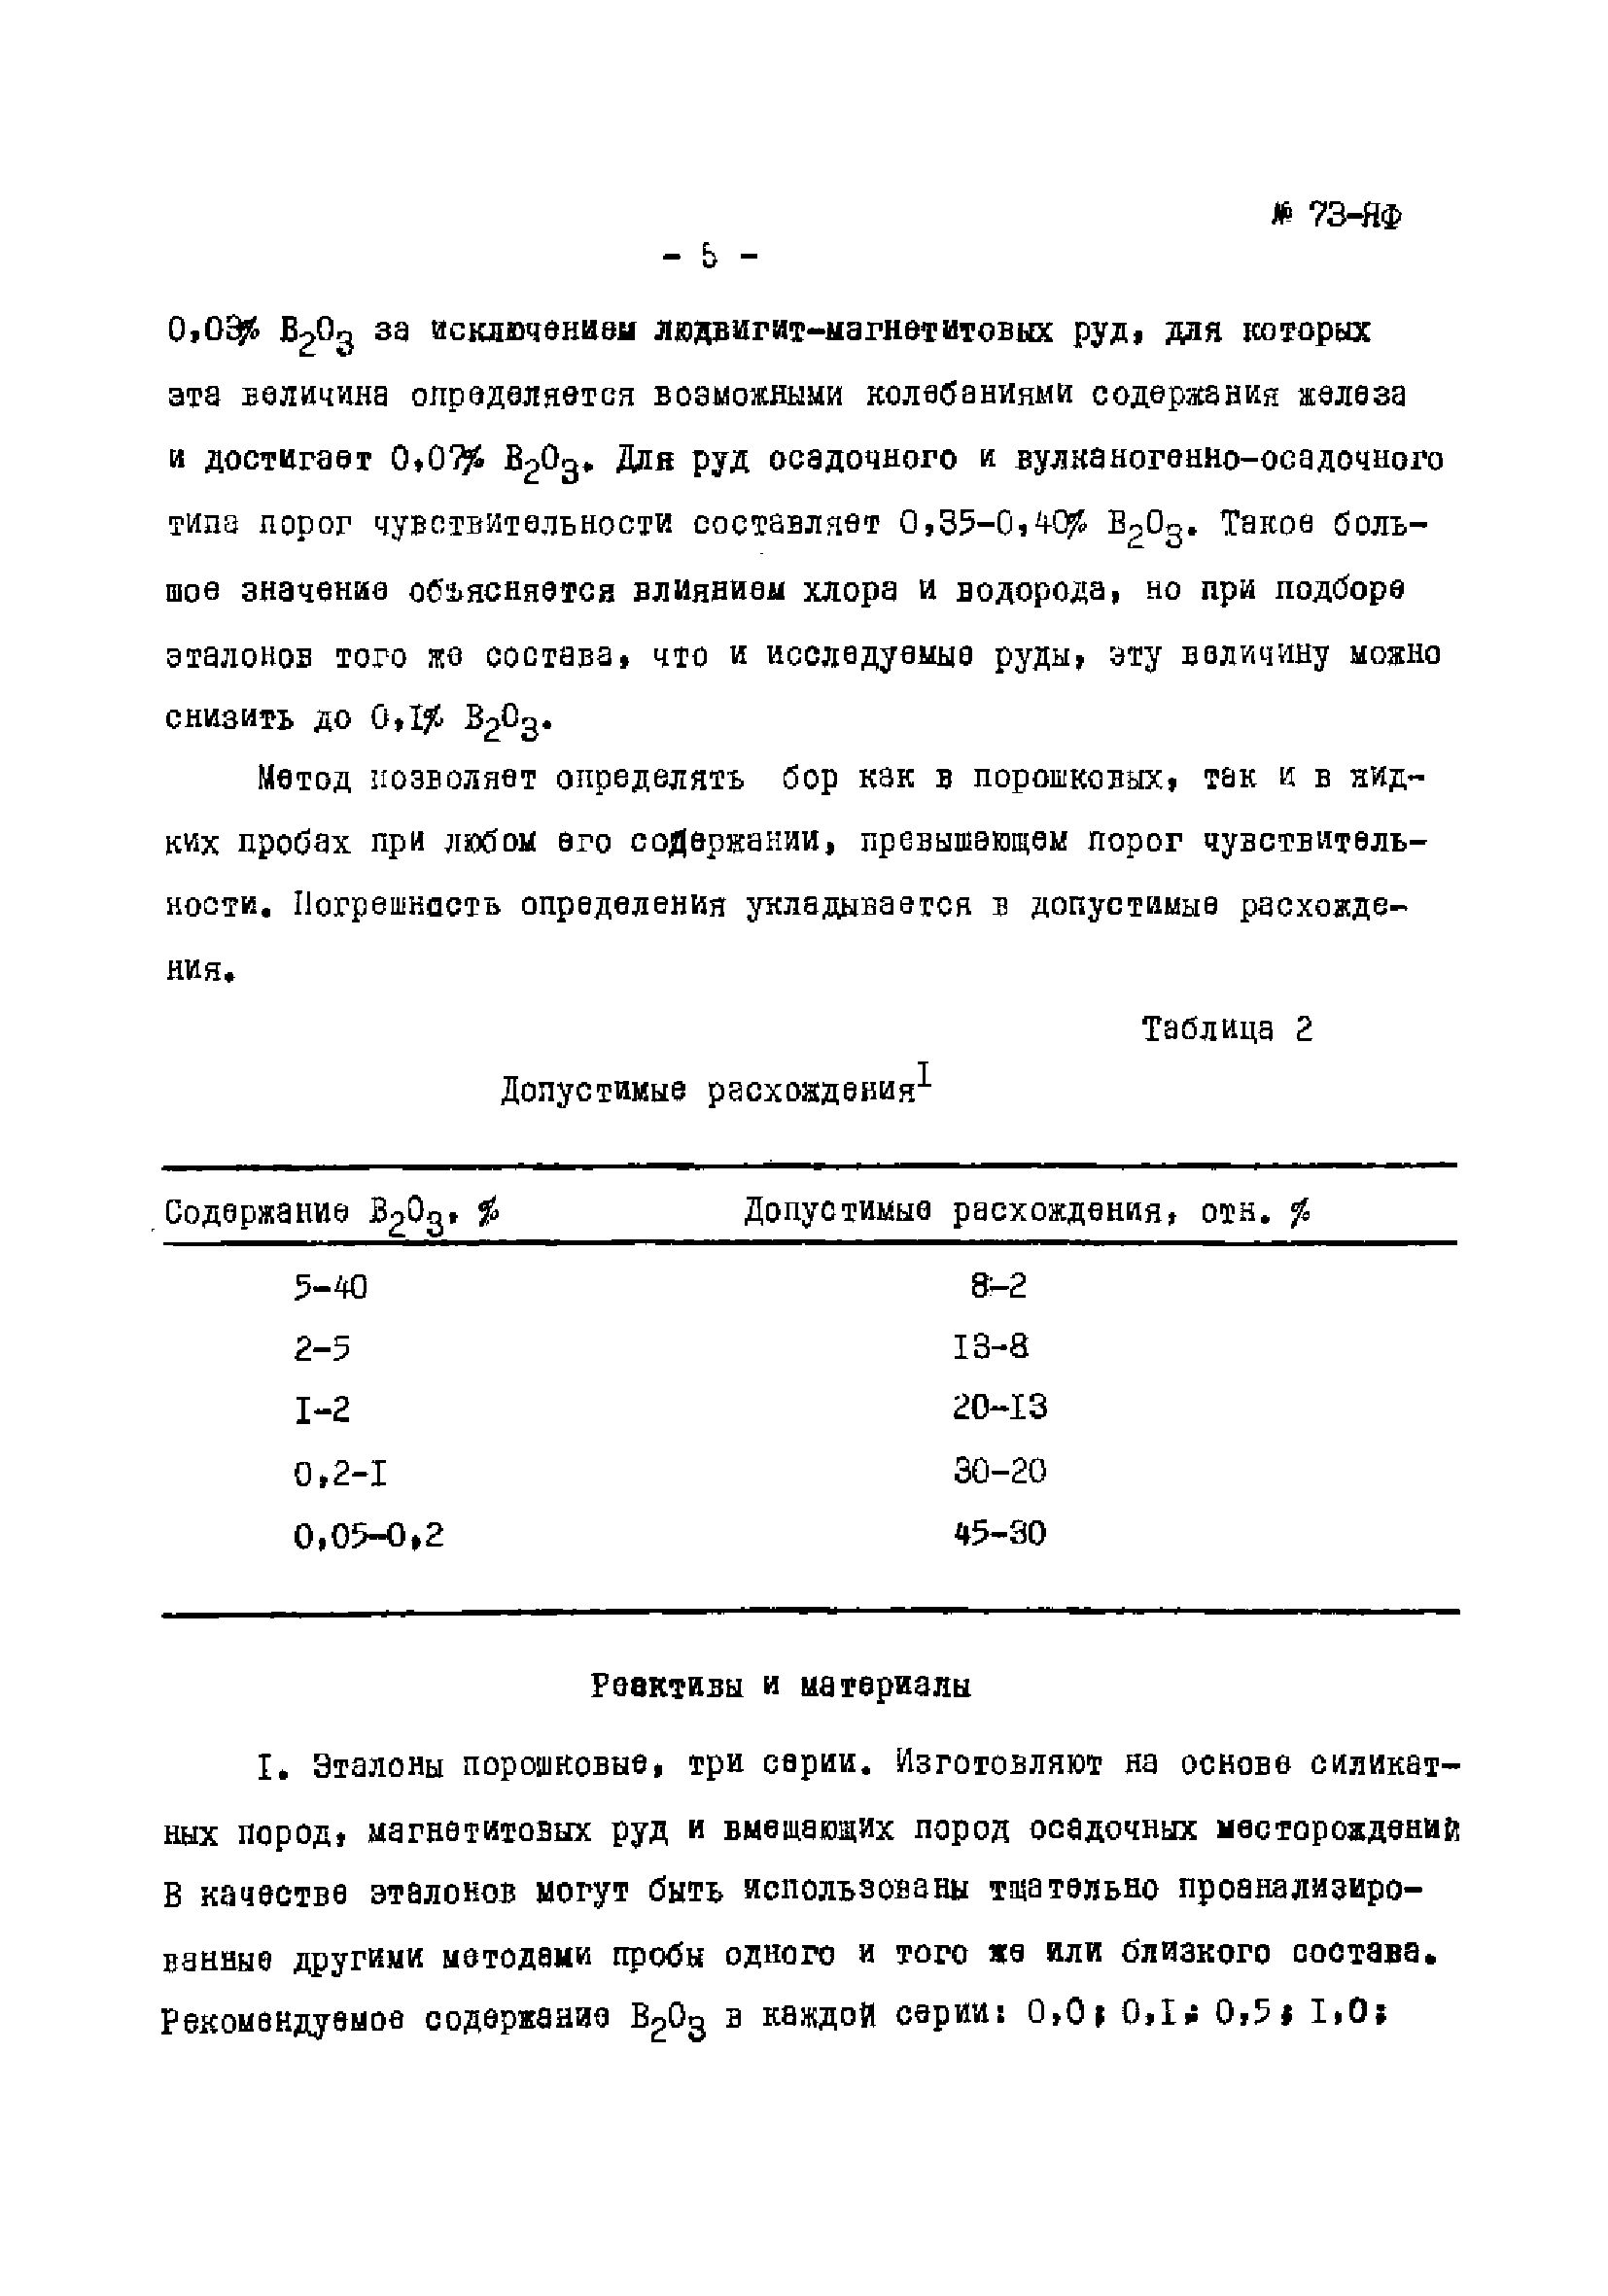 Инструкция НСАМ 73-ЯФ